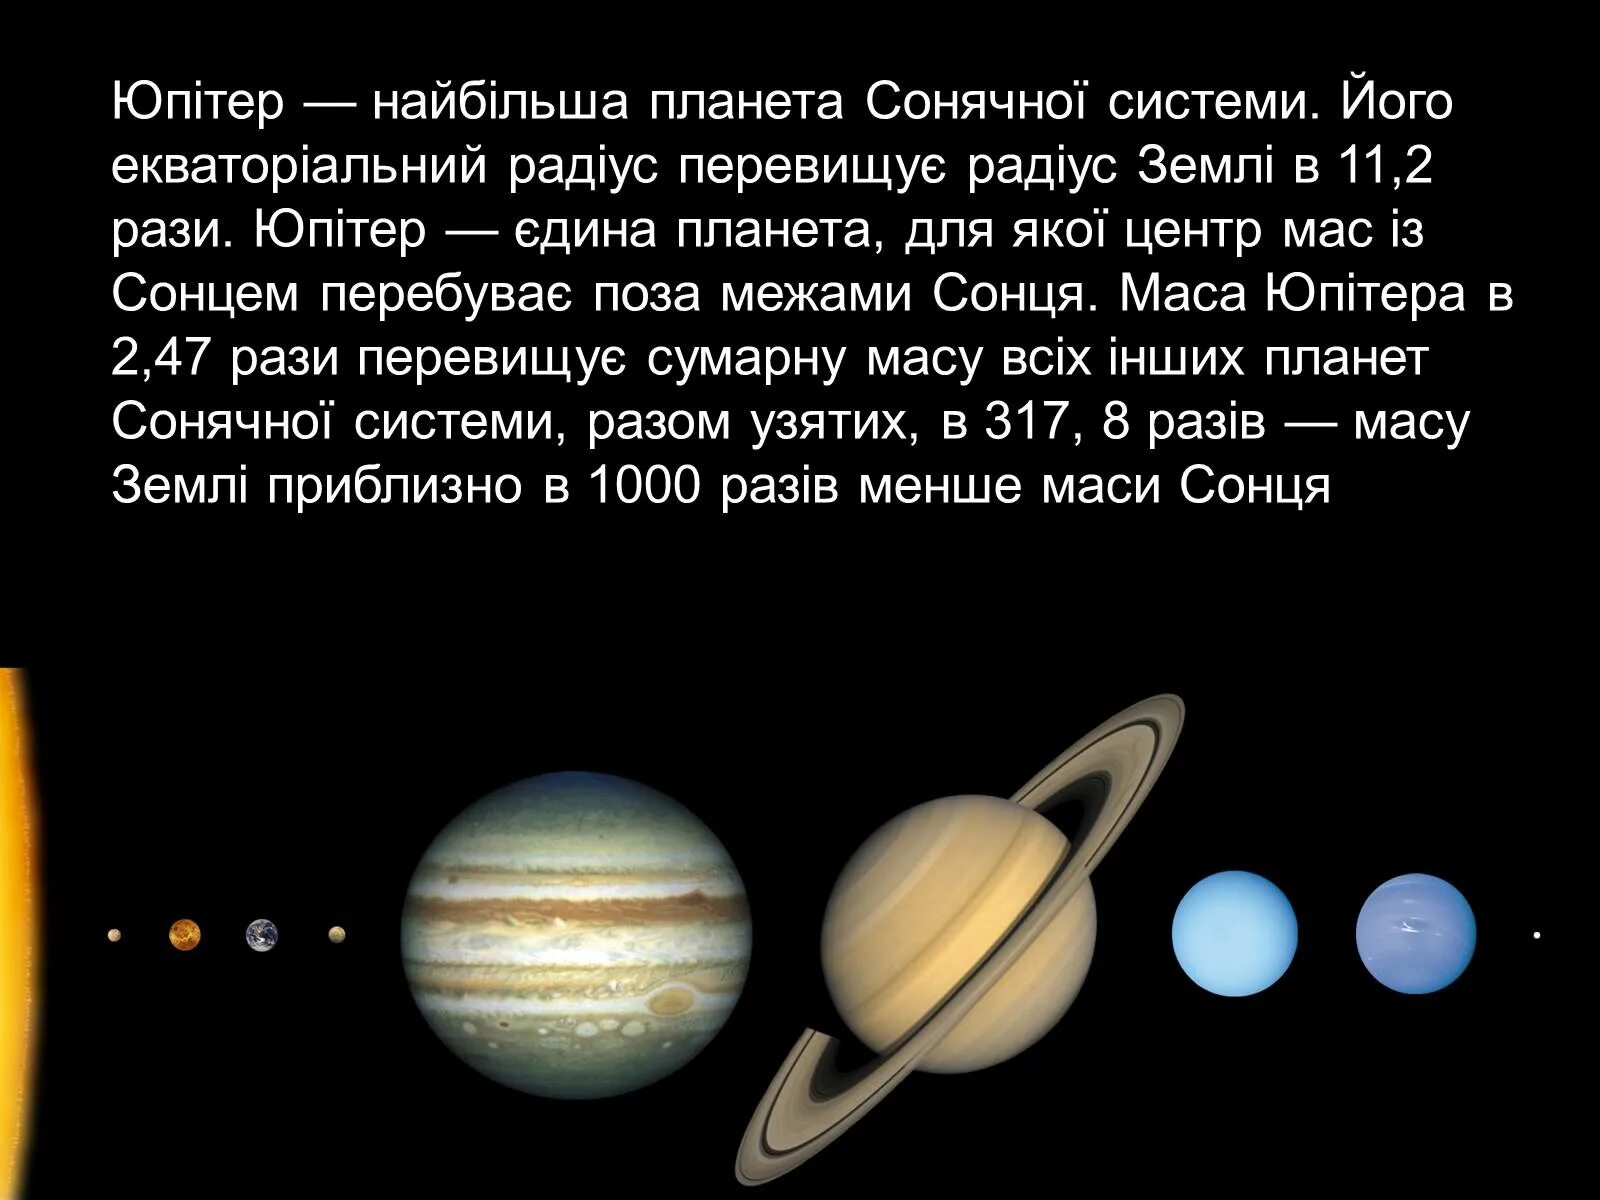 5 по счету планета. Положение Юпитера в солнечной системе. Юпитер Планета положение в солнечной системе. Юпитер Планета газовый гигант. Юпитер Планета от солнца.